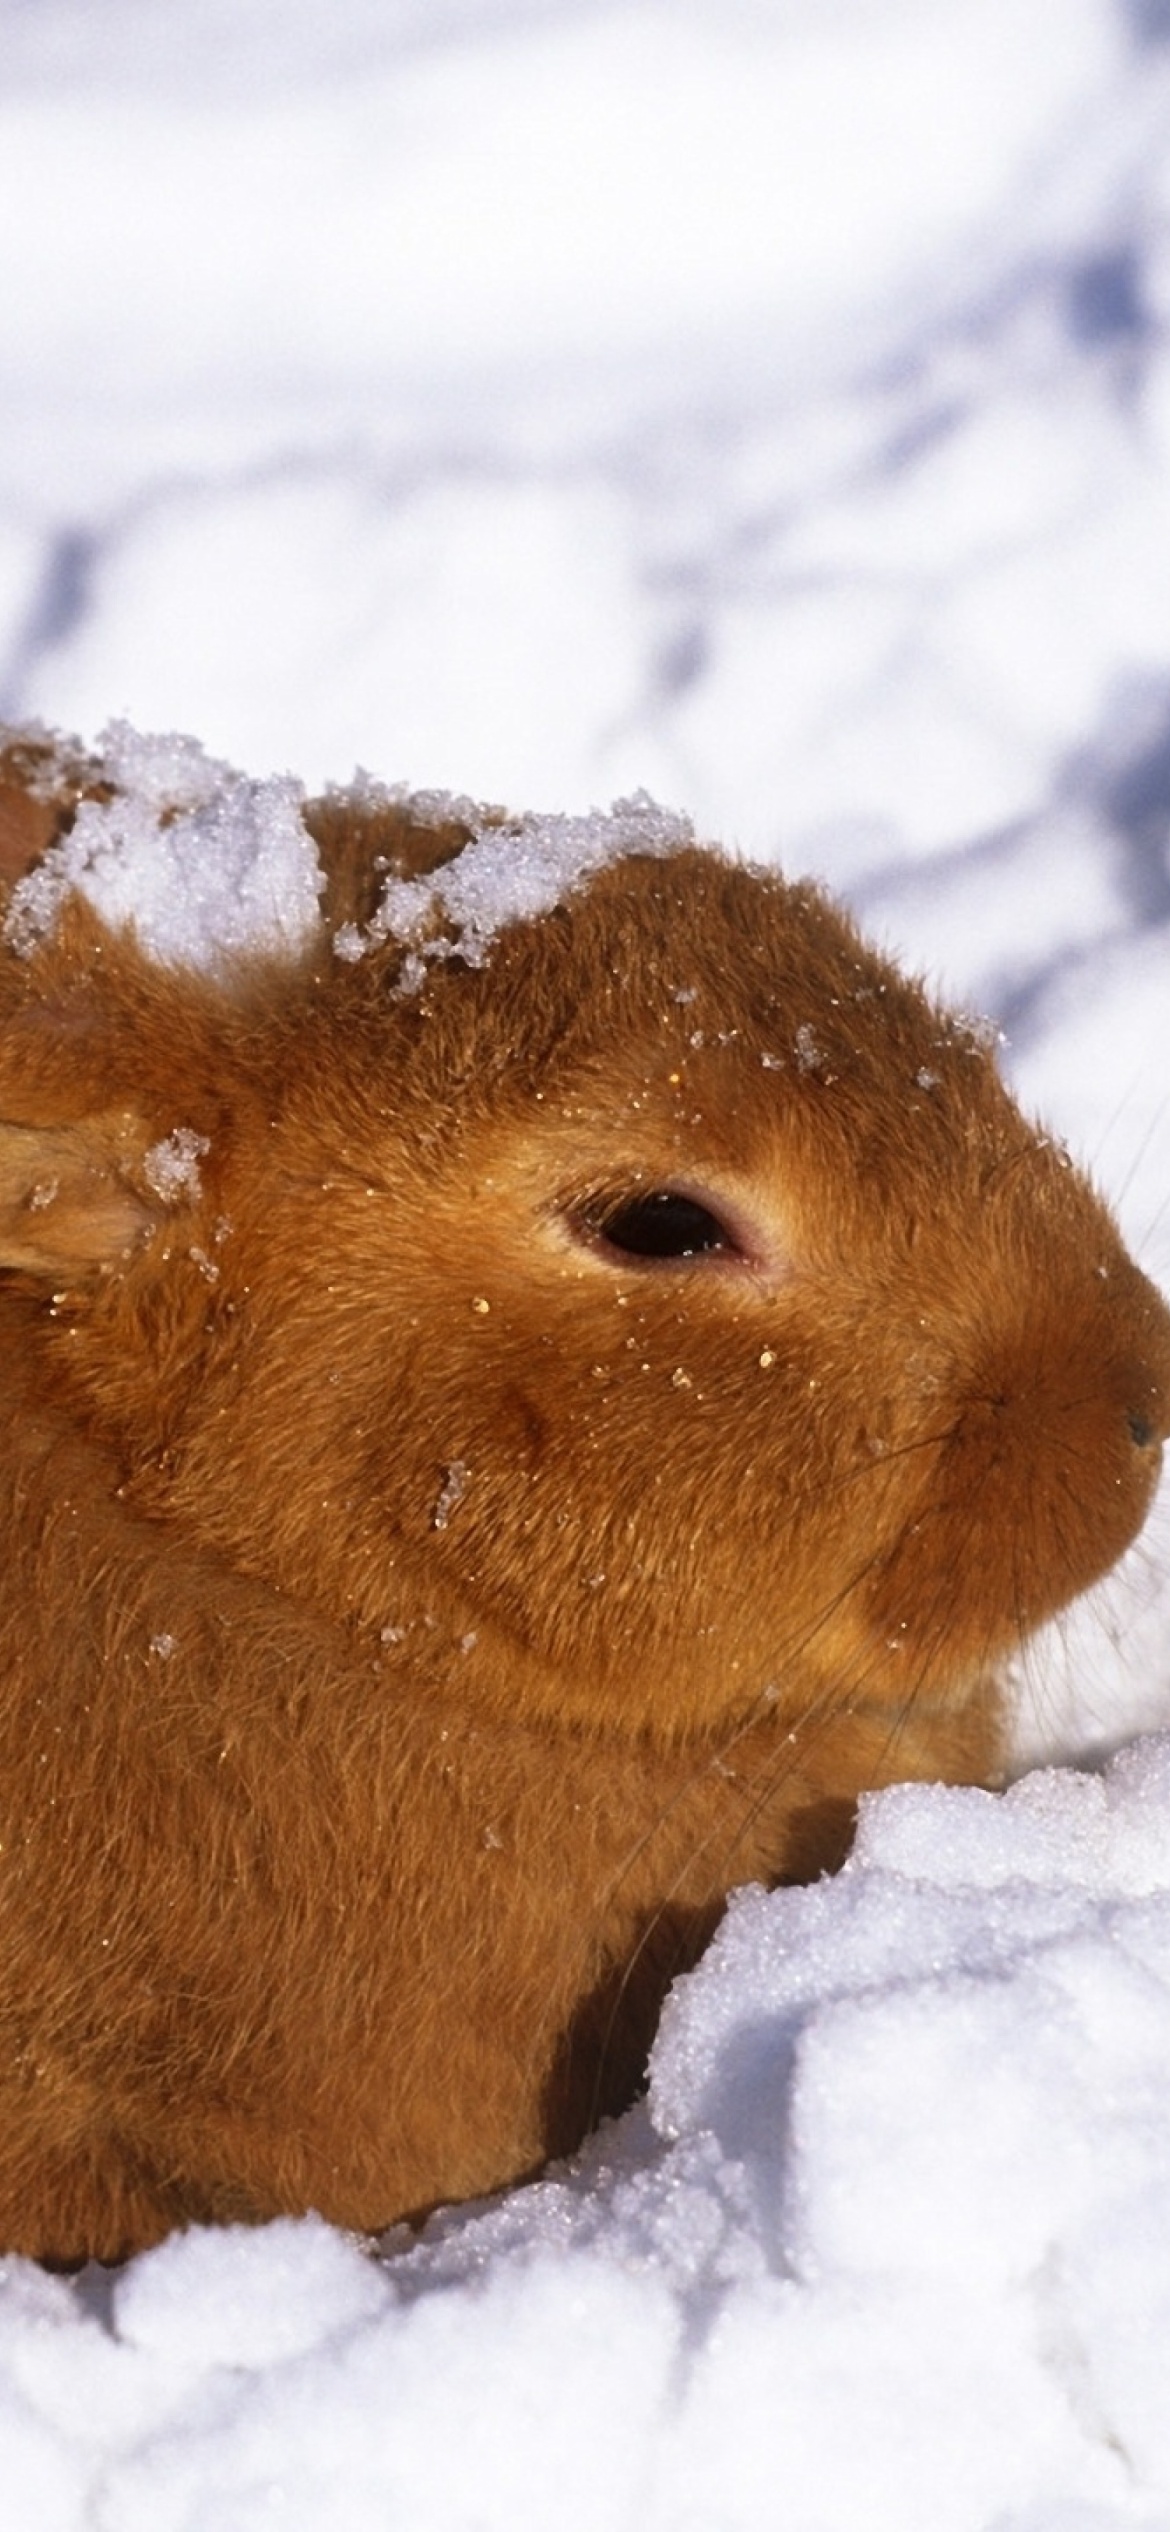 Sfondi Rabbit in Snow 1170x2532